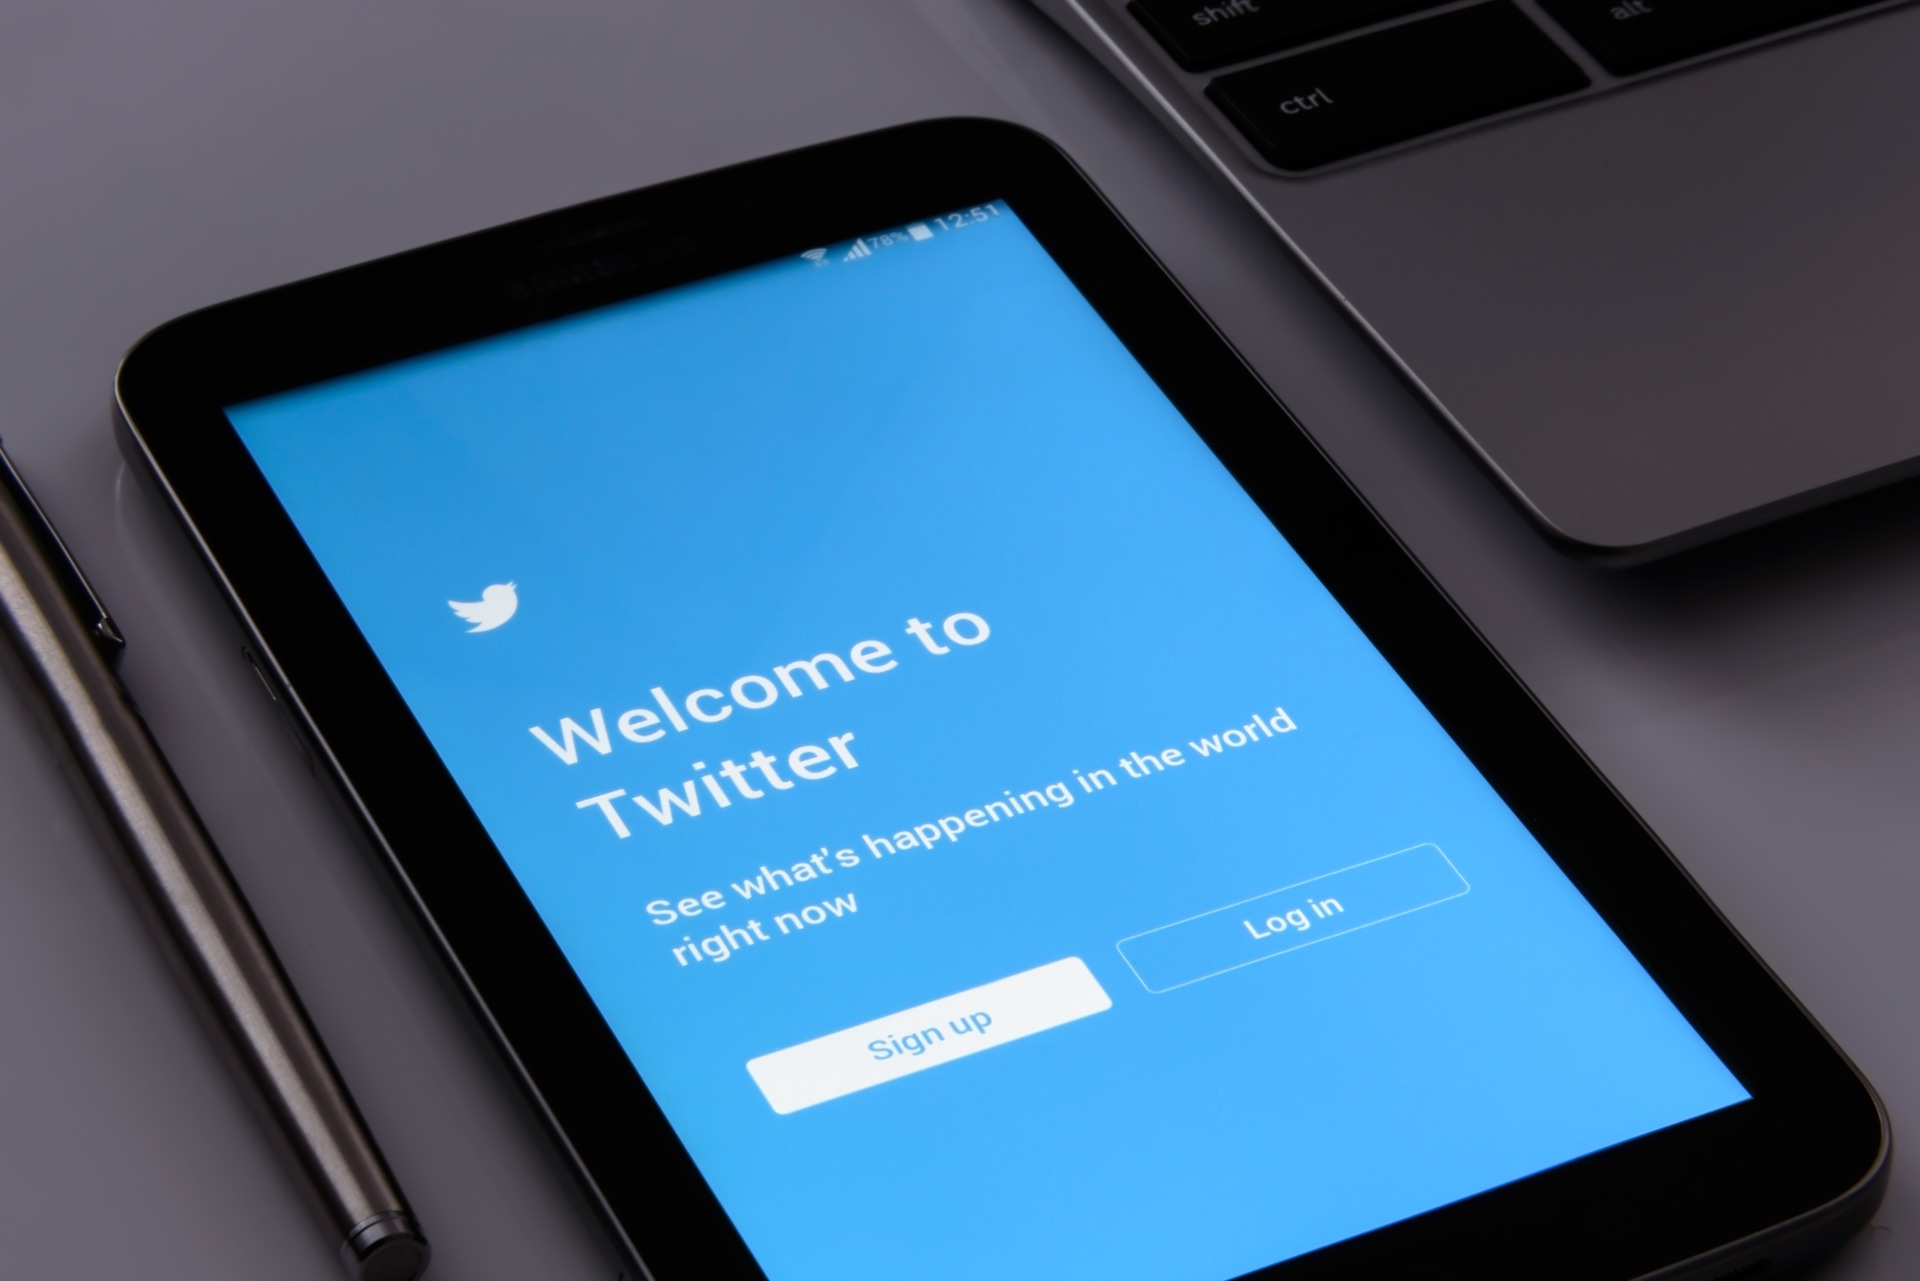 Snapshot: Understanding your metrics on Twitter